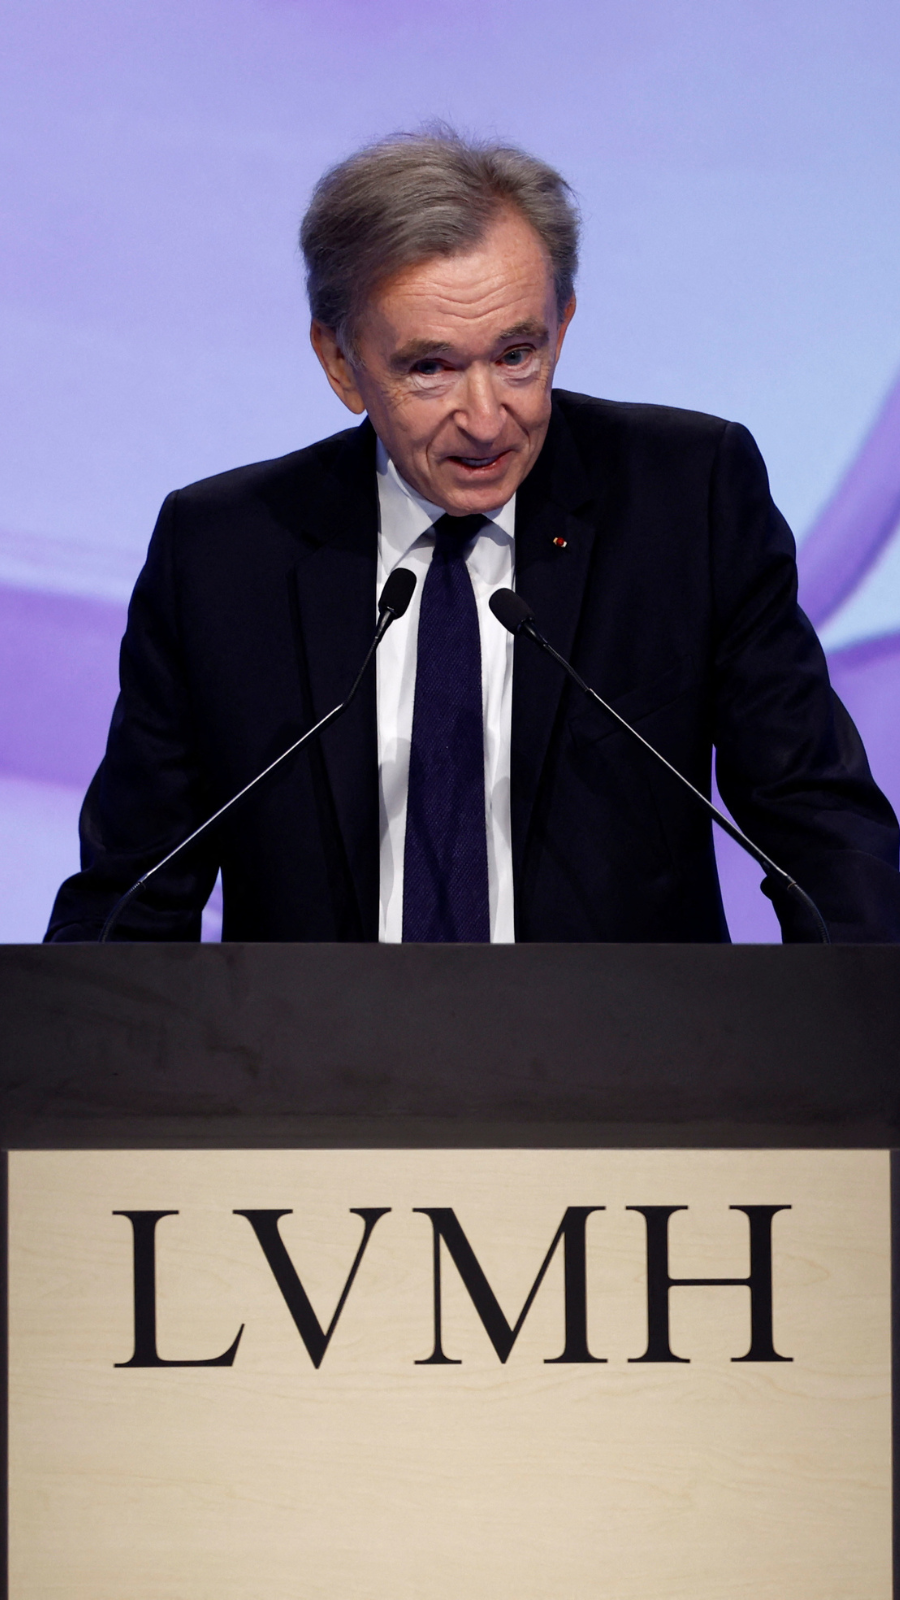 LVMH: Bernard Arnault has not yet chosen a successor